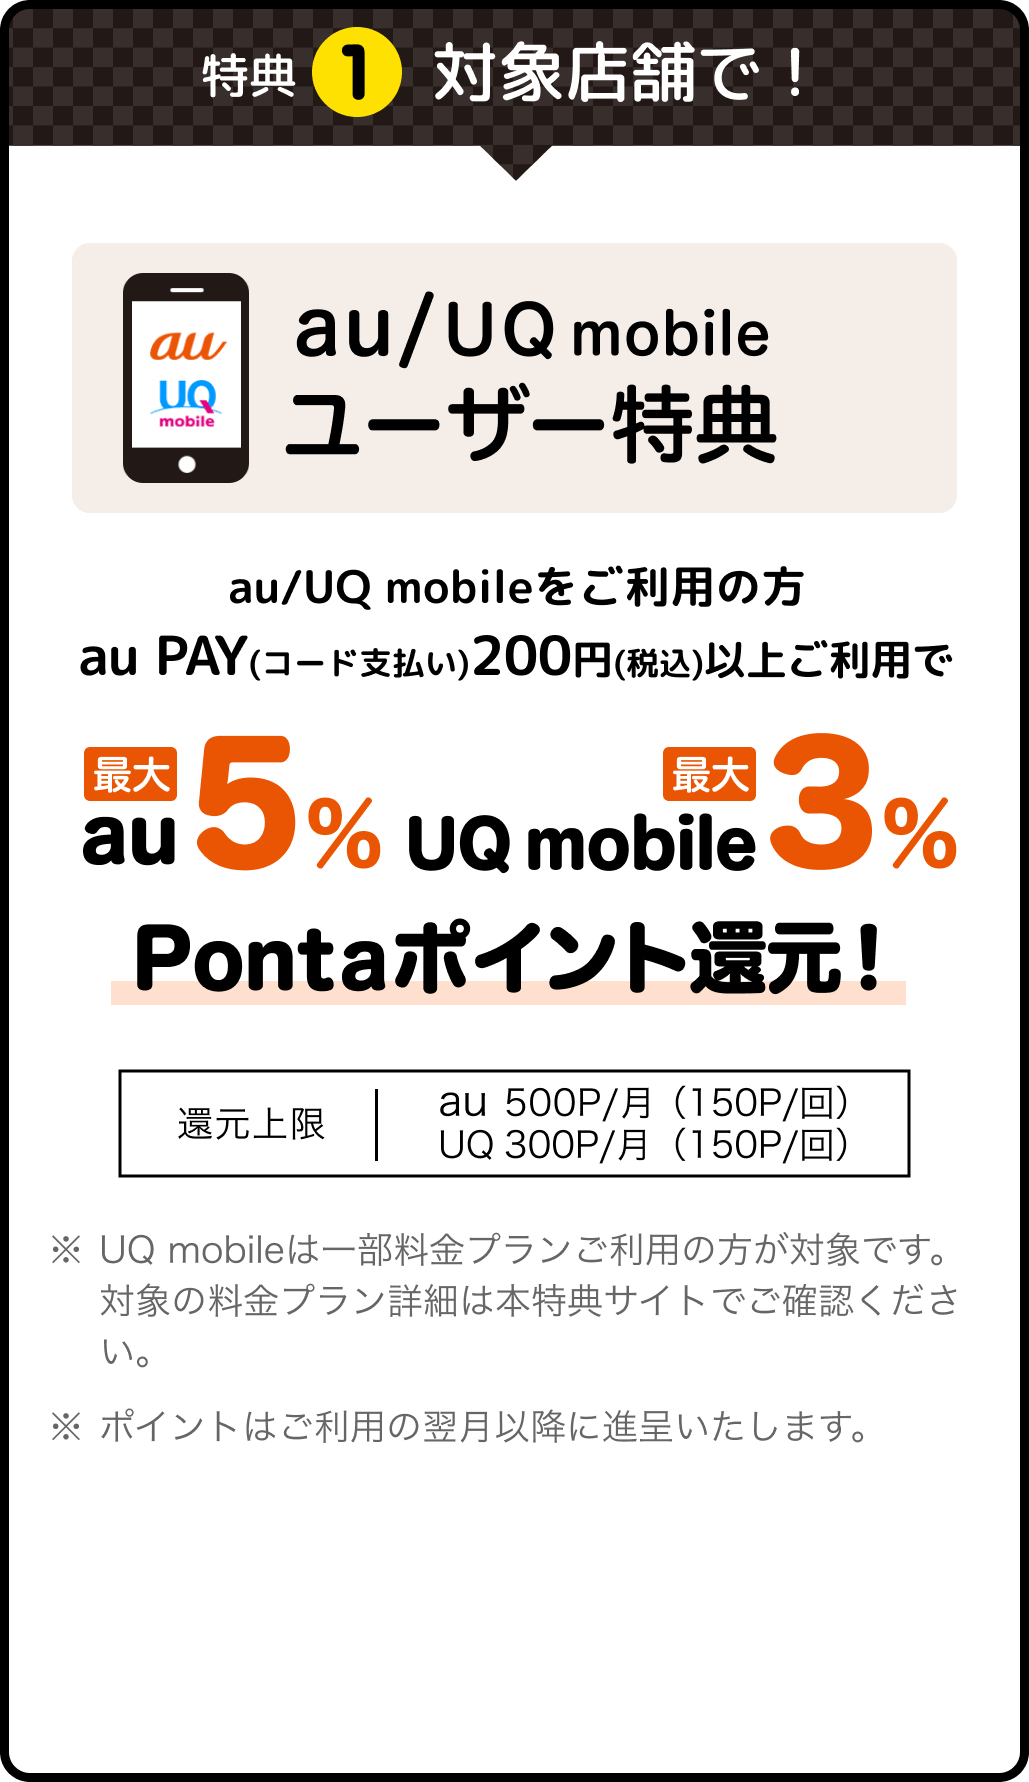 特典1 対象店舗で！ au / UQ mobile ユーザー特典